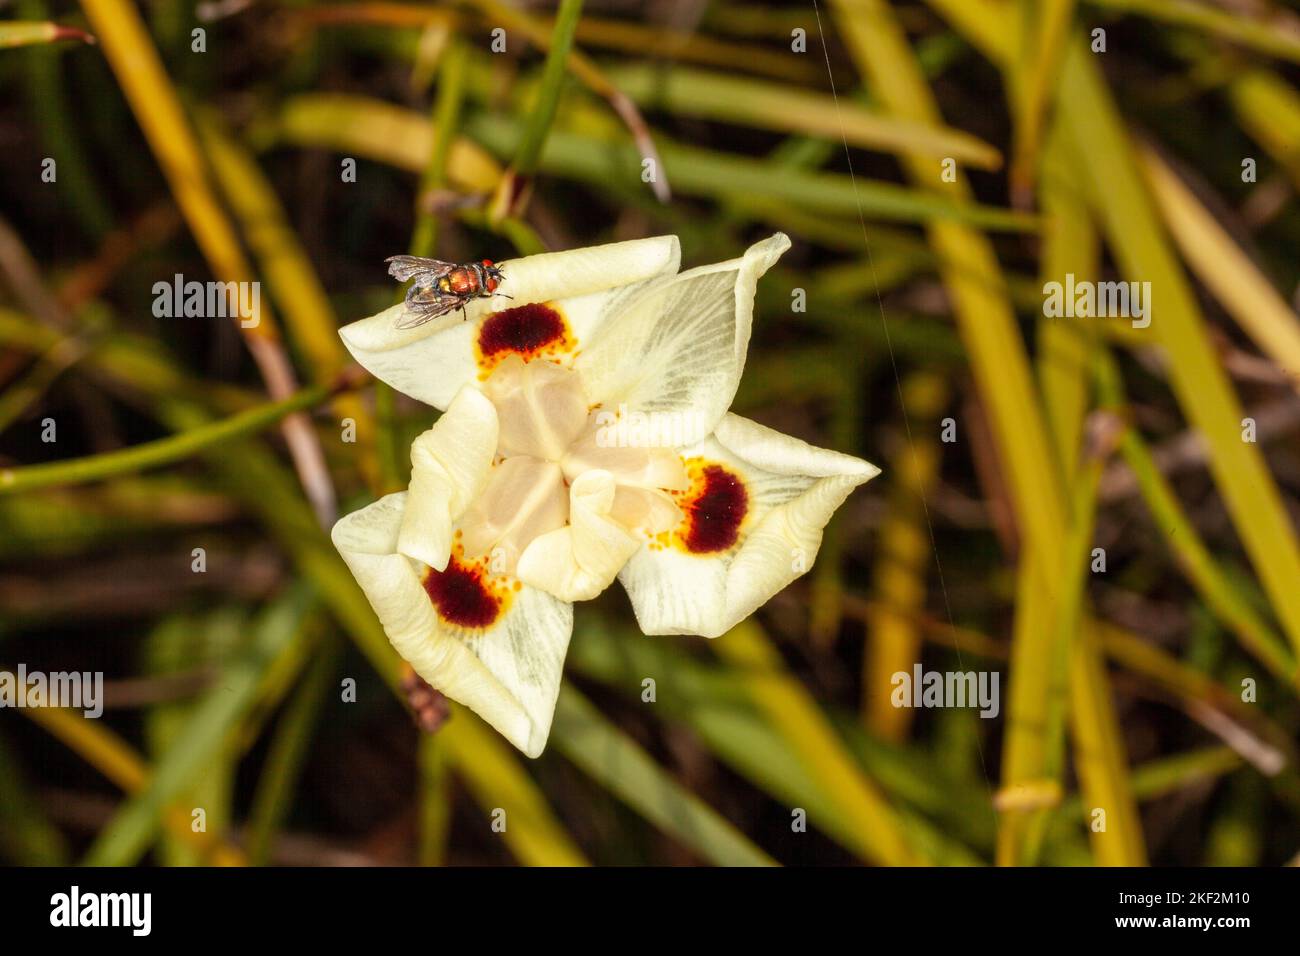 Dietes bicolor, die afrikanische Iris, vierzehn Tage Lilie oder gelbe wilde Iris, ist eine klumpenbildende rhizomatöse mehrjährige Pflanze mit langen Schwert-wie immergrünen pa Stockfoto